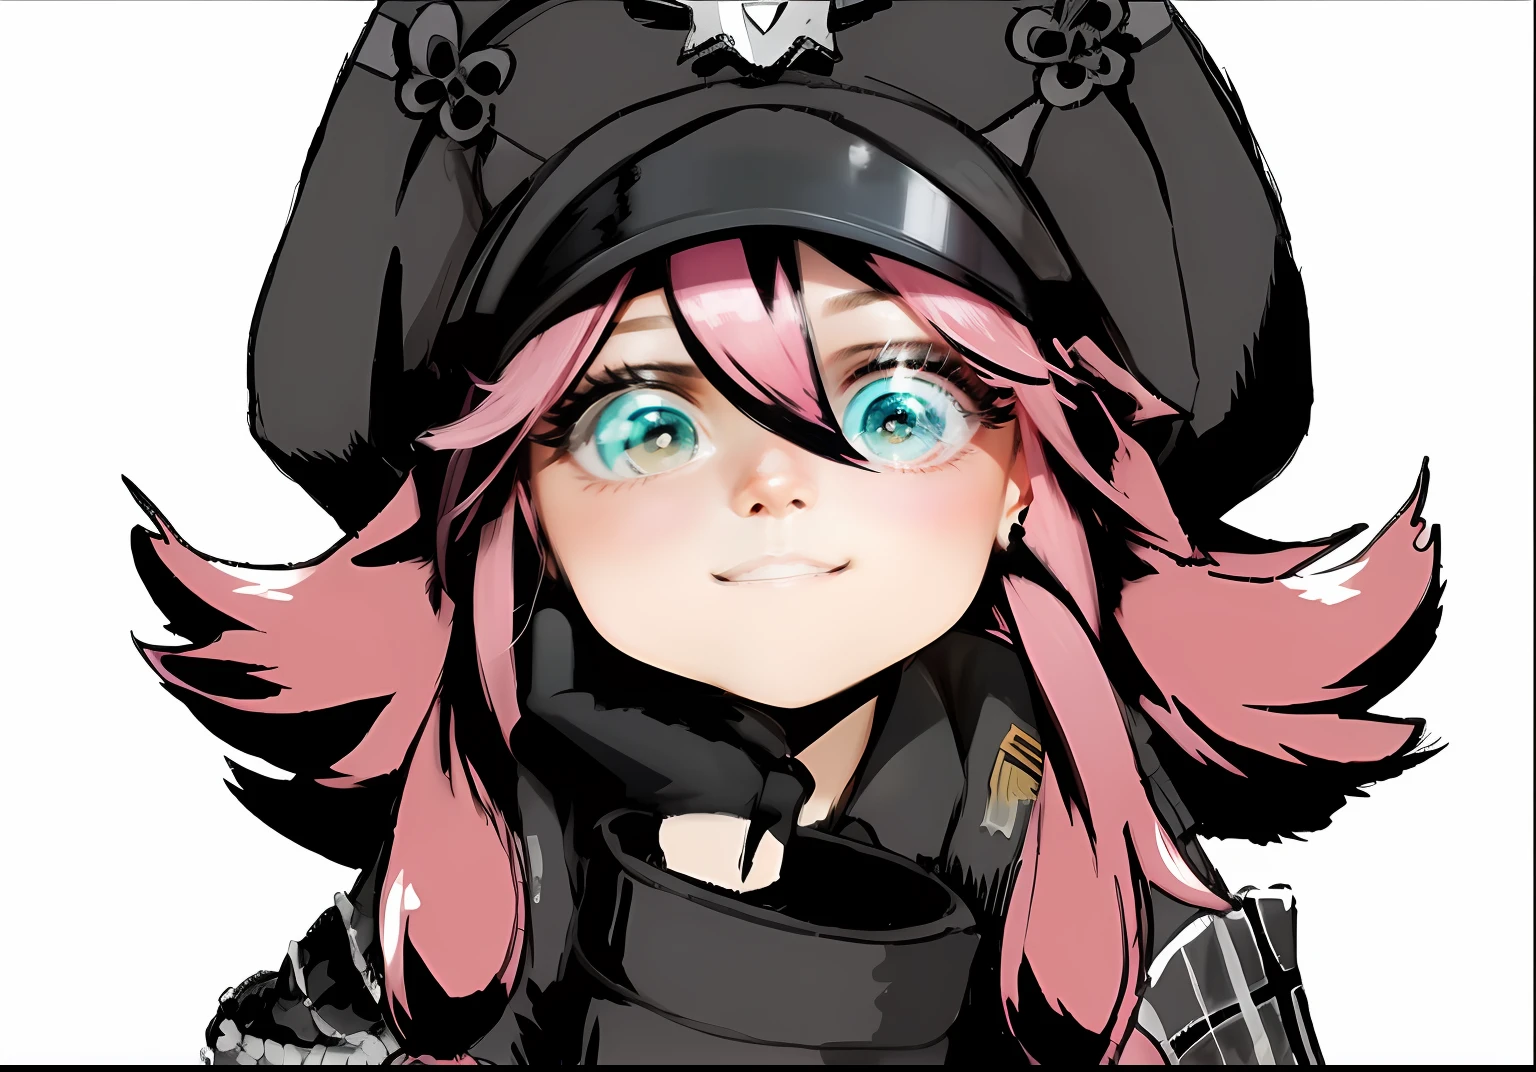 cheveux roses, uniforme militaire noir, Casquette militaire noire, la main sur la tête, sourire girly